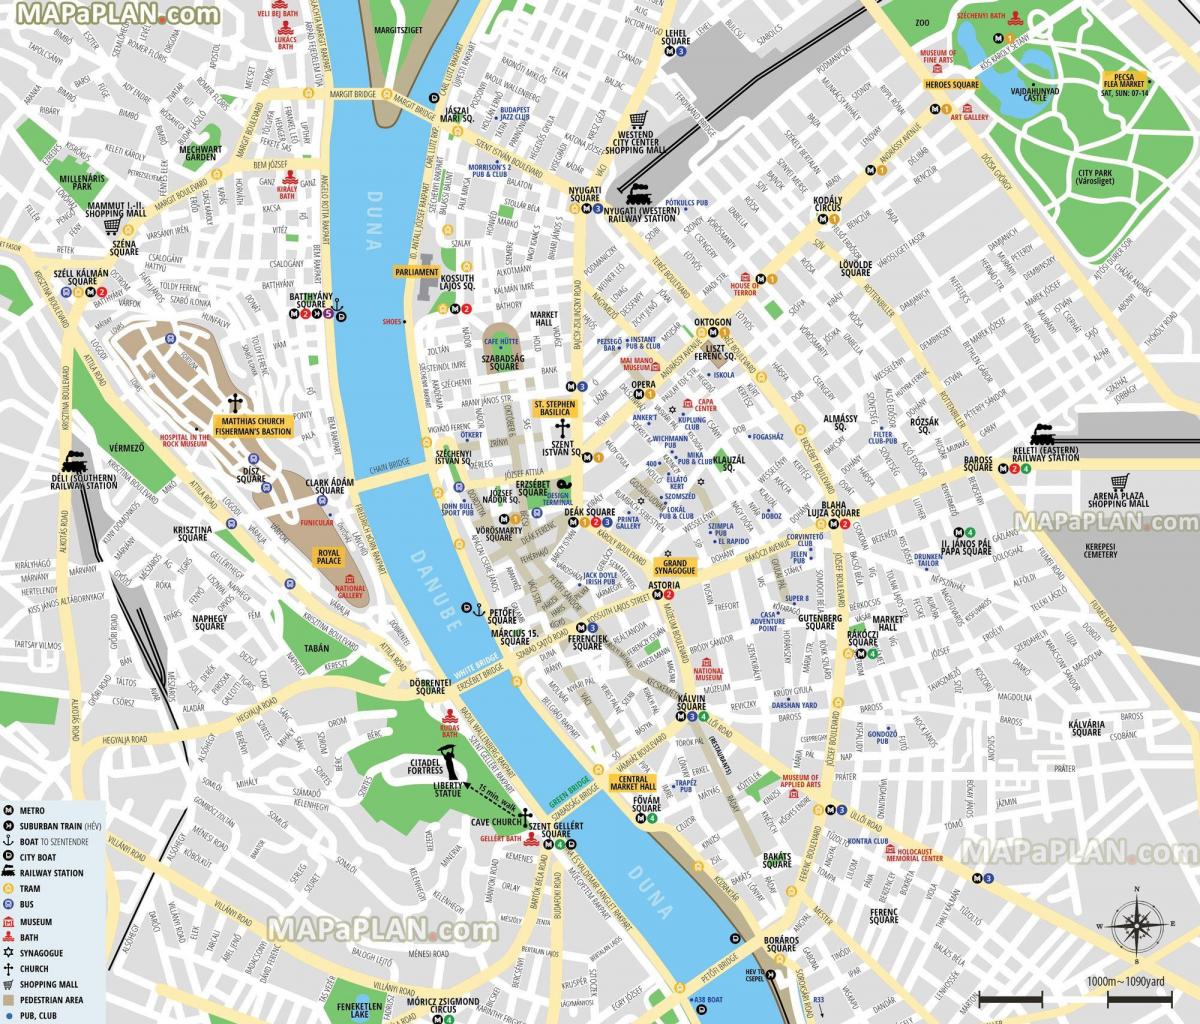 Mapa do centro da cidade de Budapeste